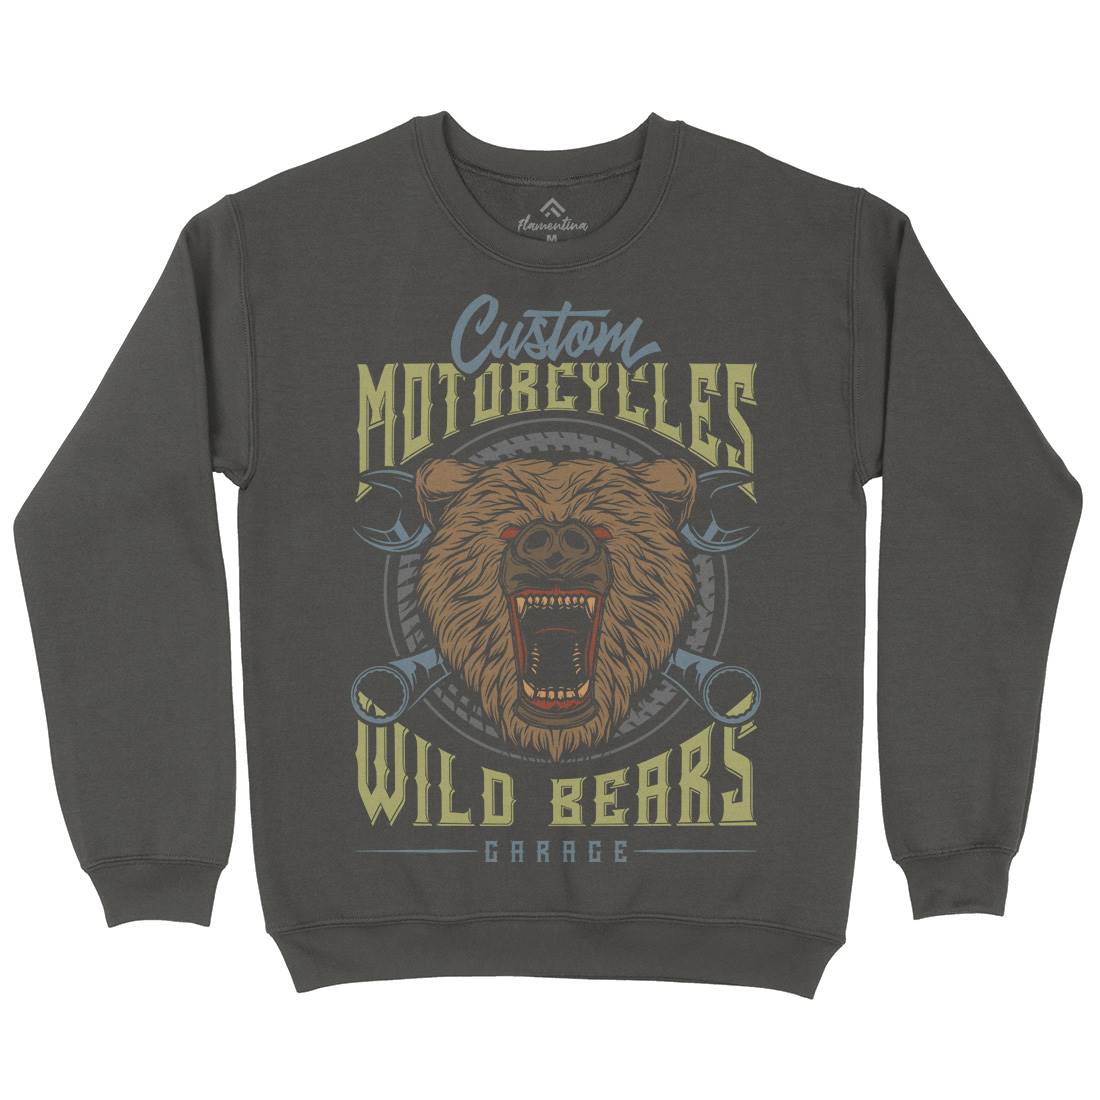 Wild Bears Kids Crew Neck Sweatshirt Motorcycles B788